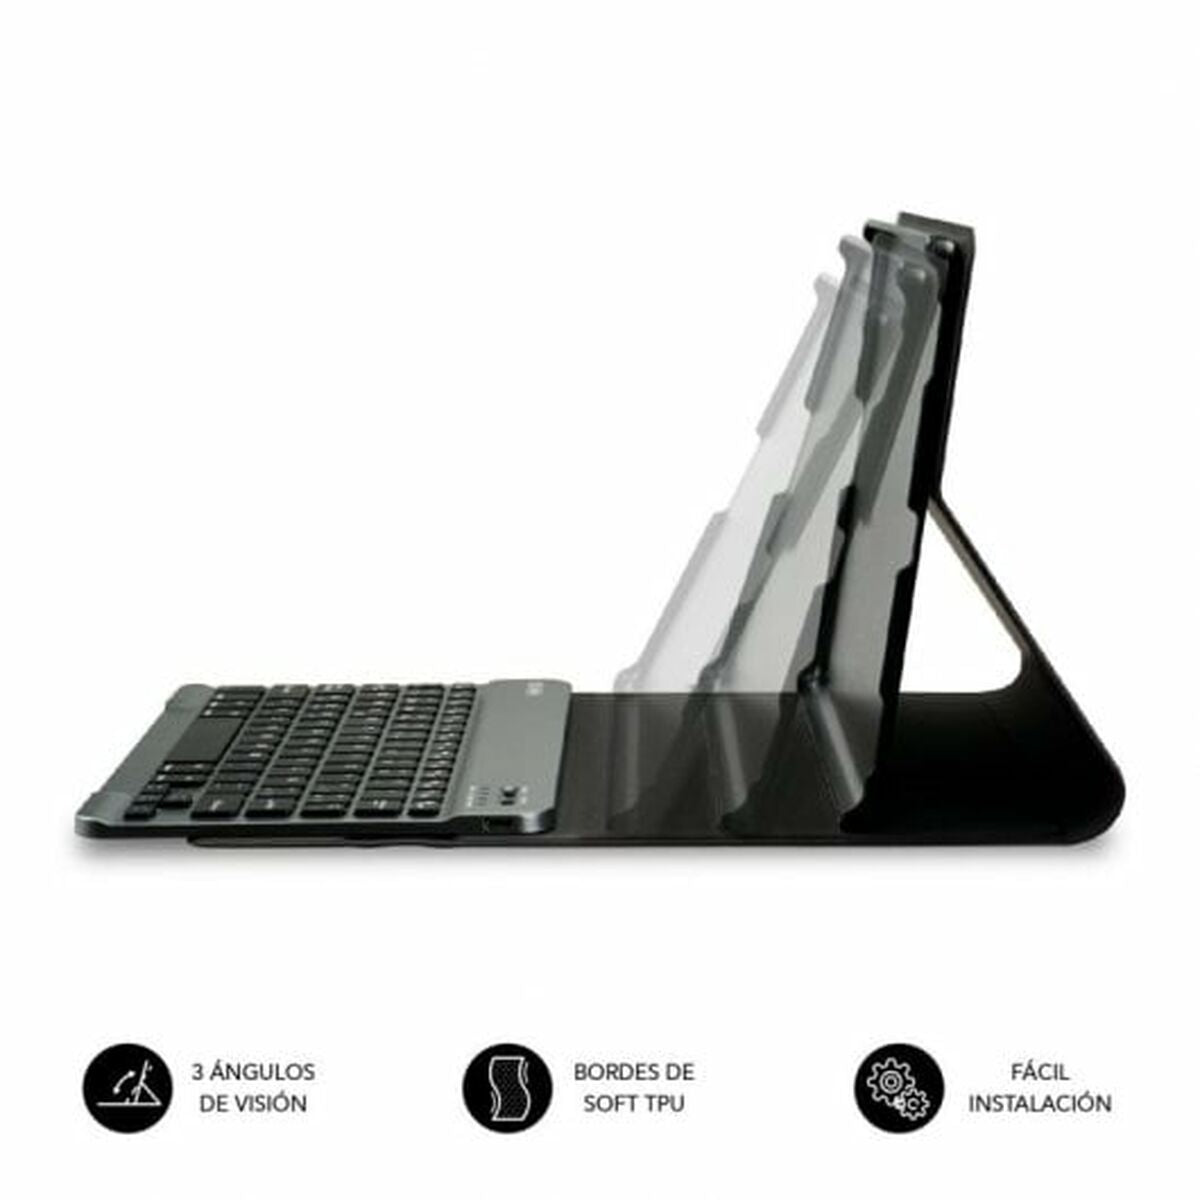 Bluetooth-Tastatur für Tablet Subblim SUBKT3-BTL200 Schwarz Qwerty Spanisch - CA International 